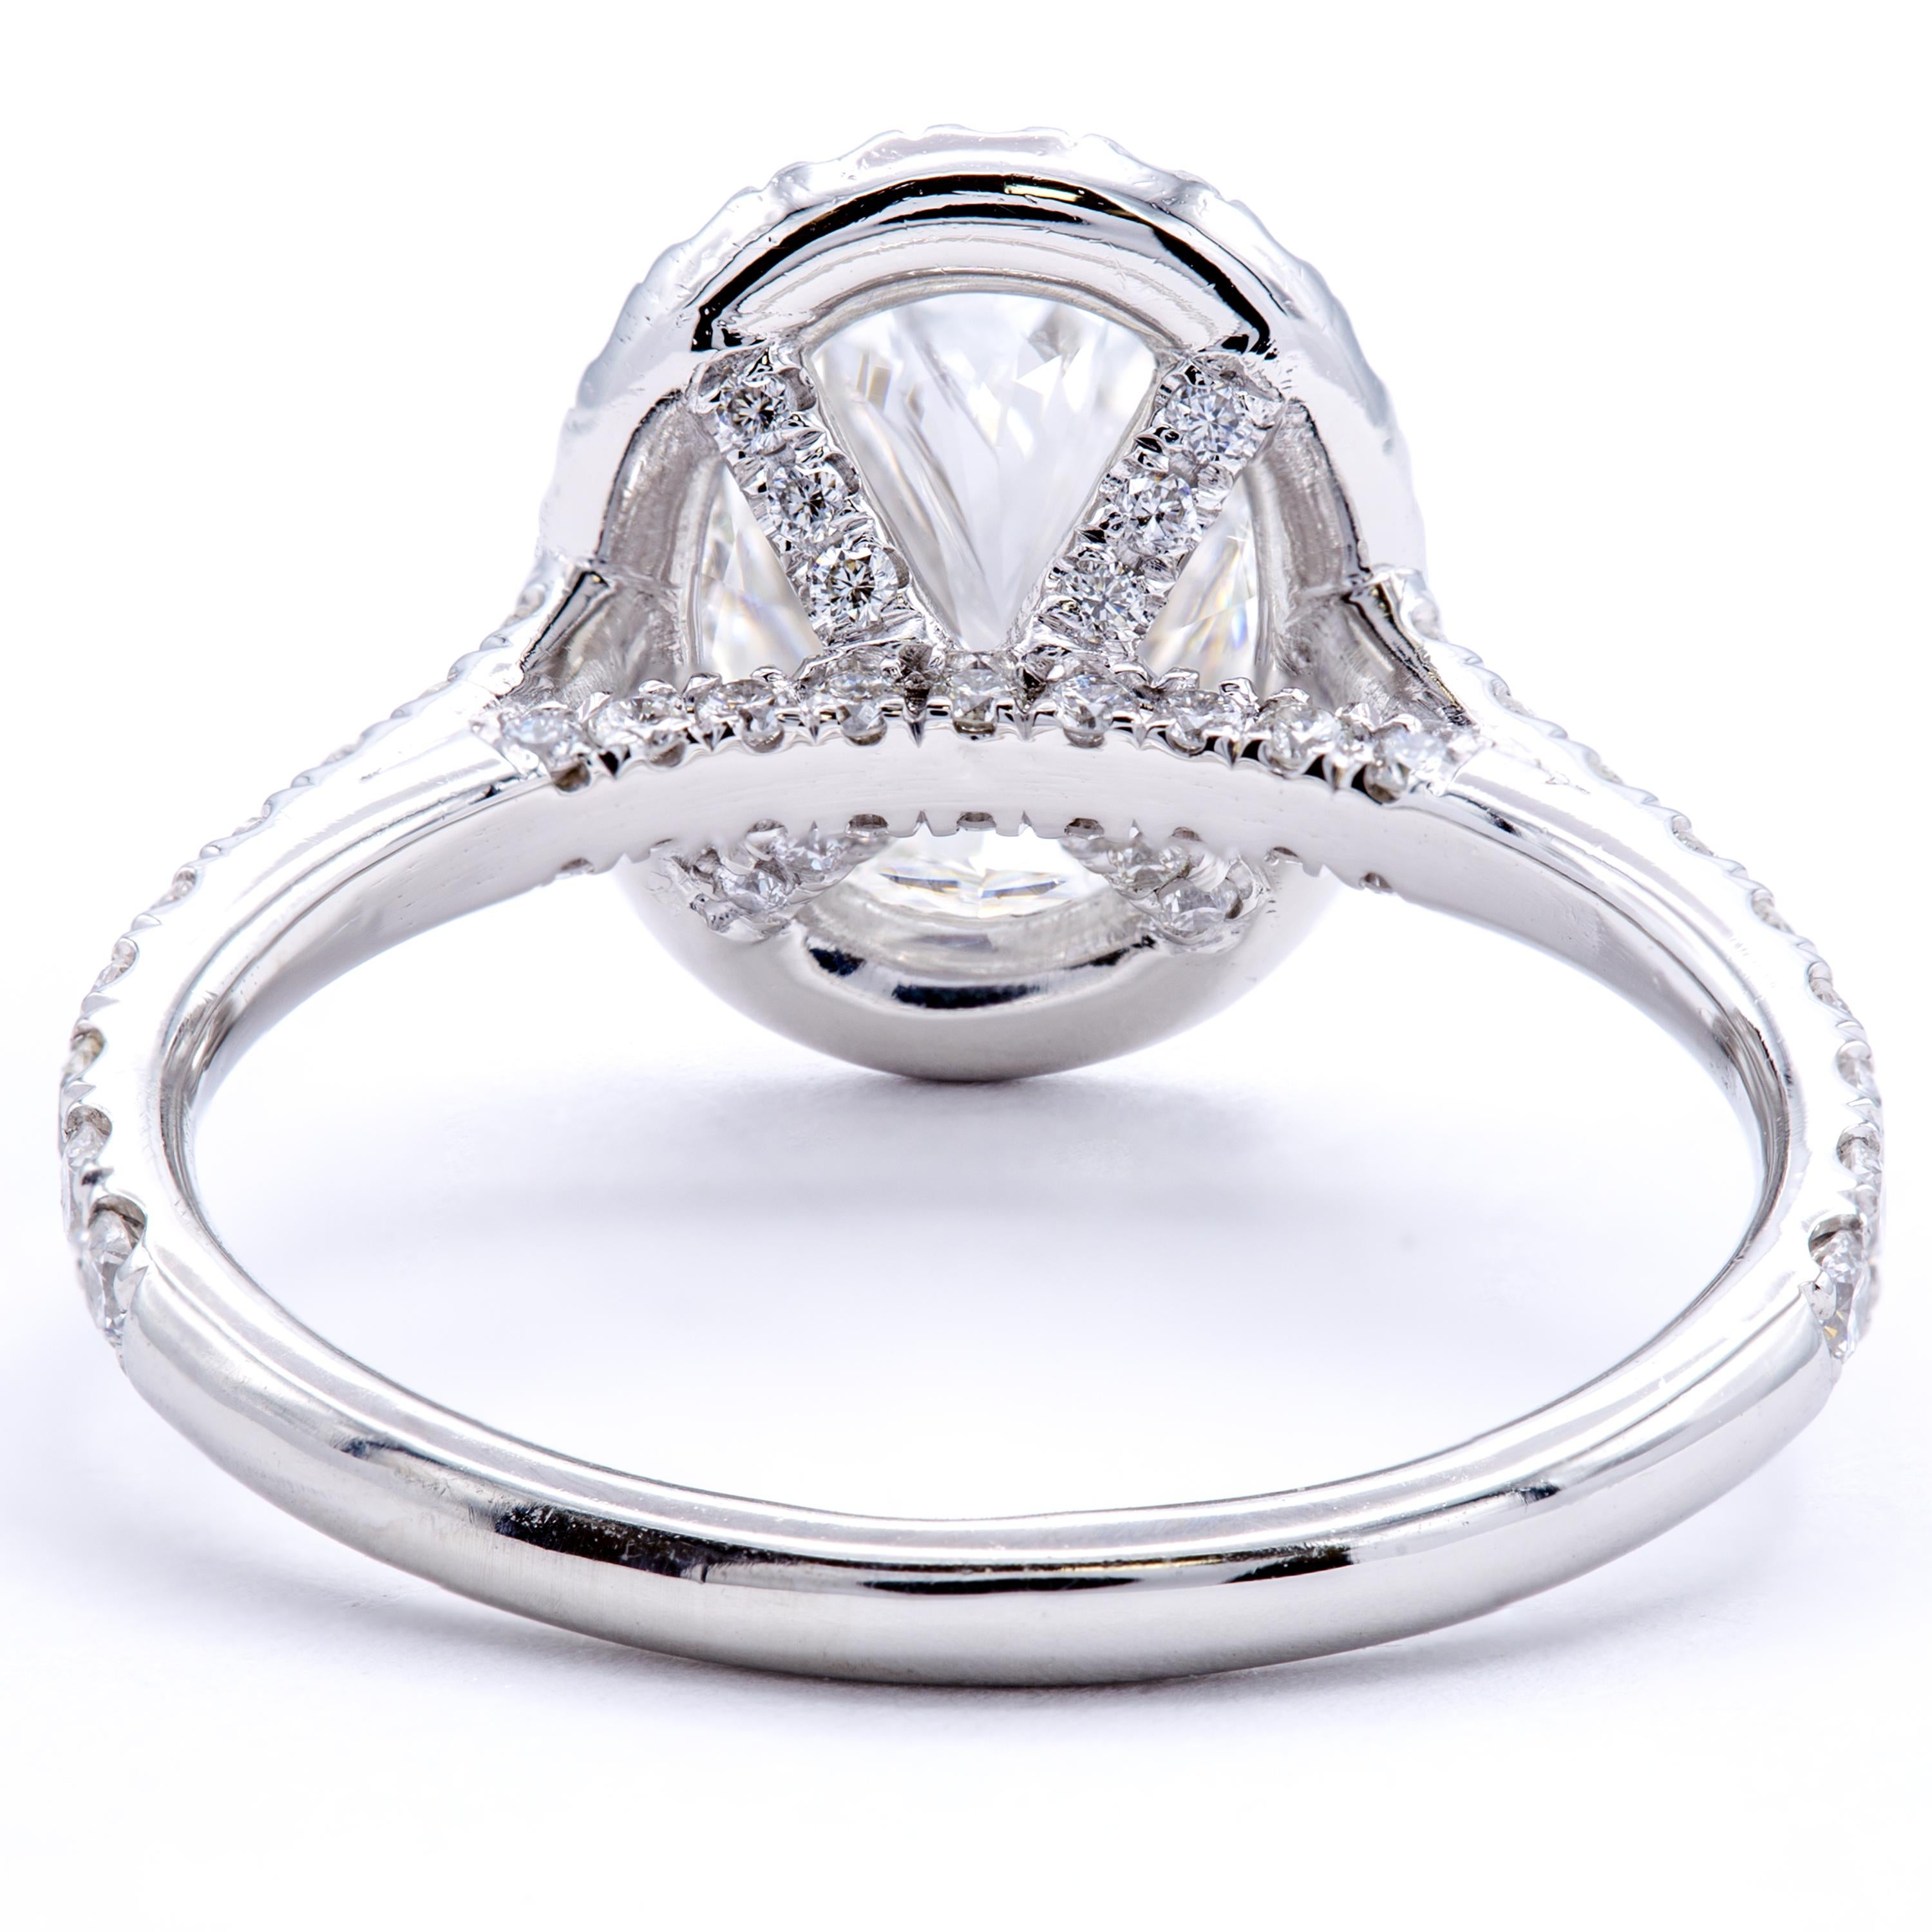 1.51 carat oval diamond ring